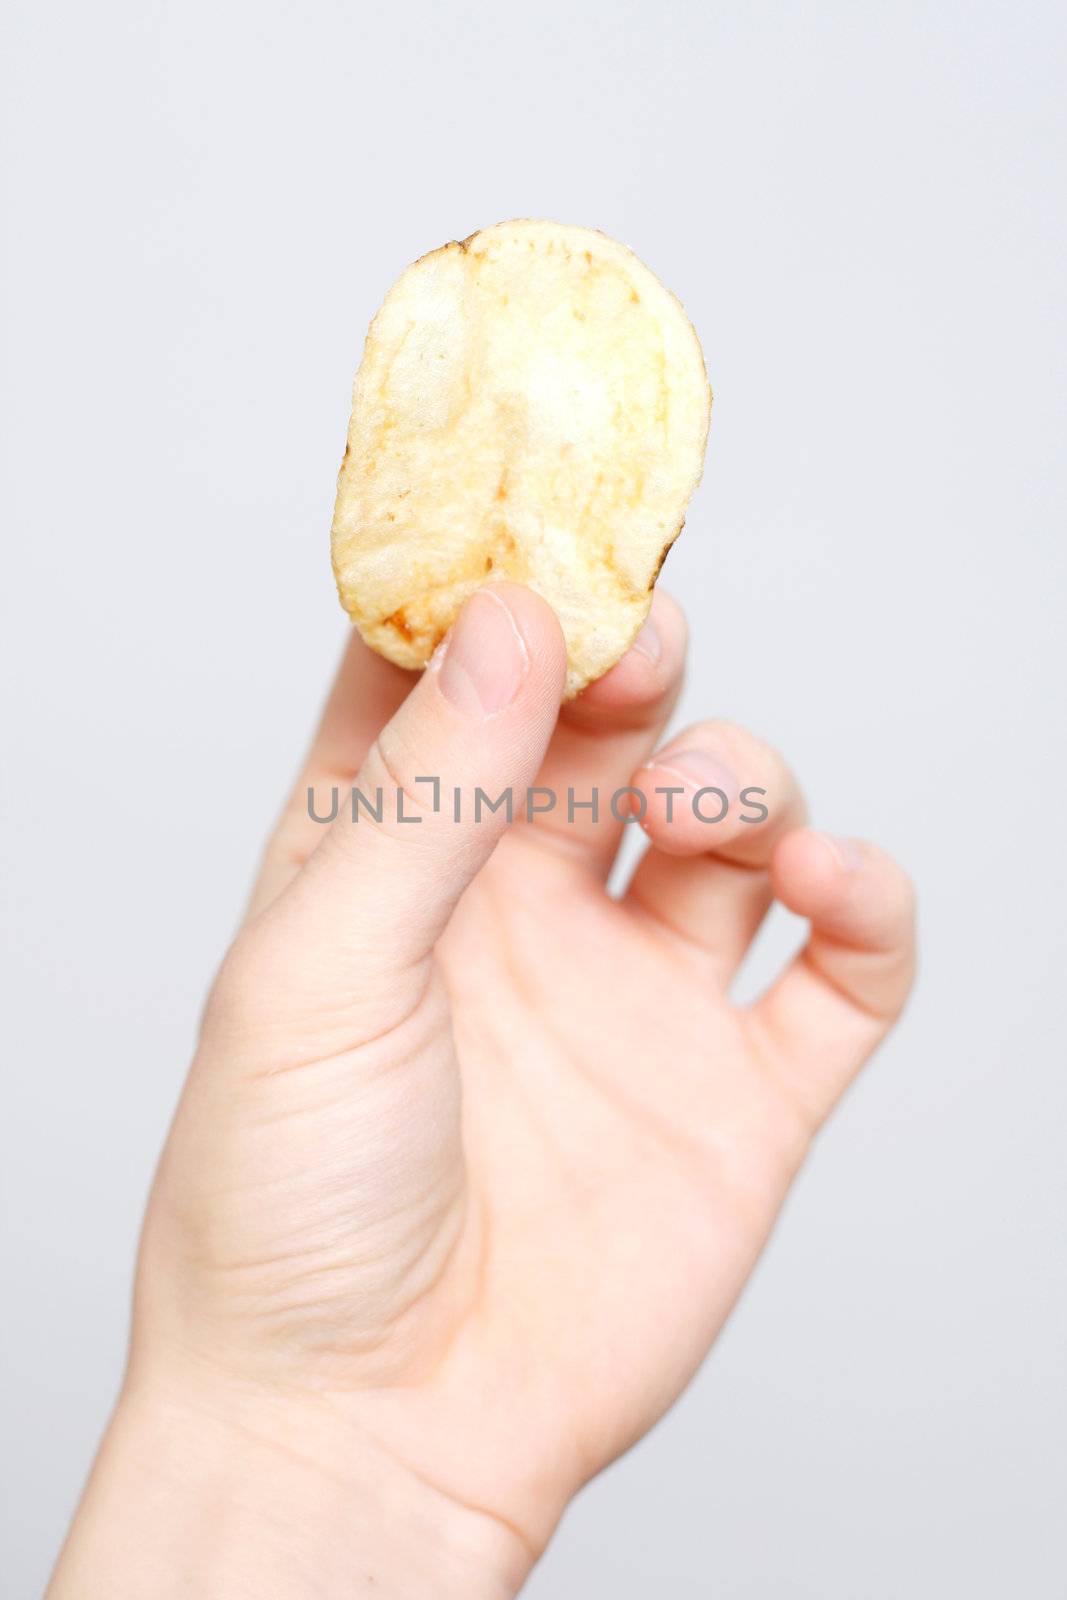 Handful of chips by leeser